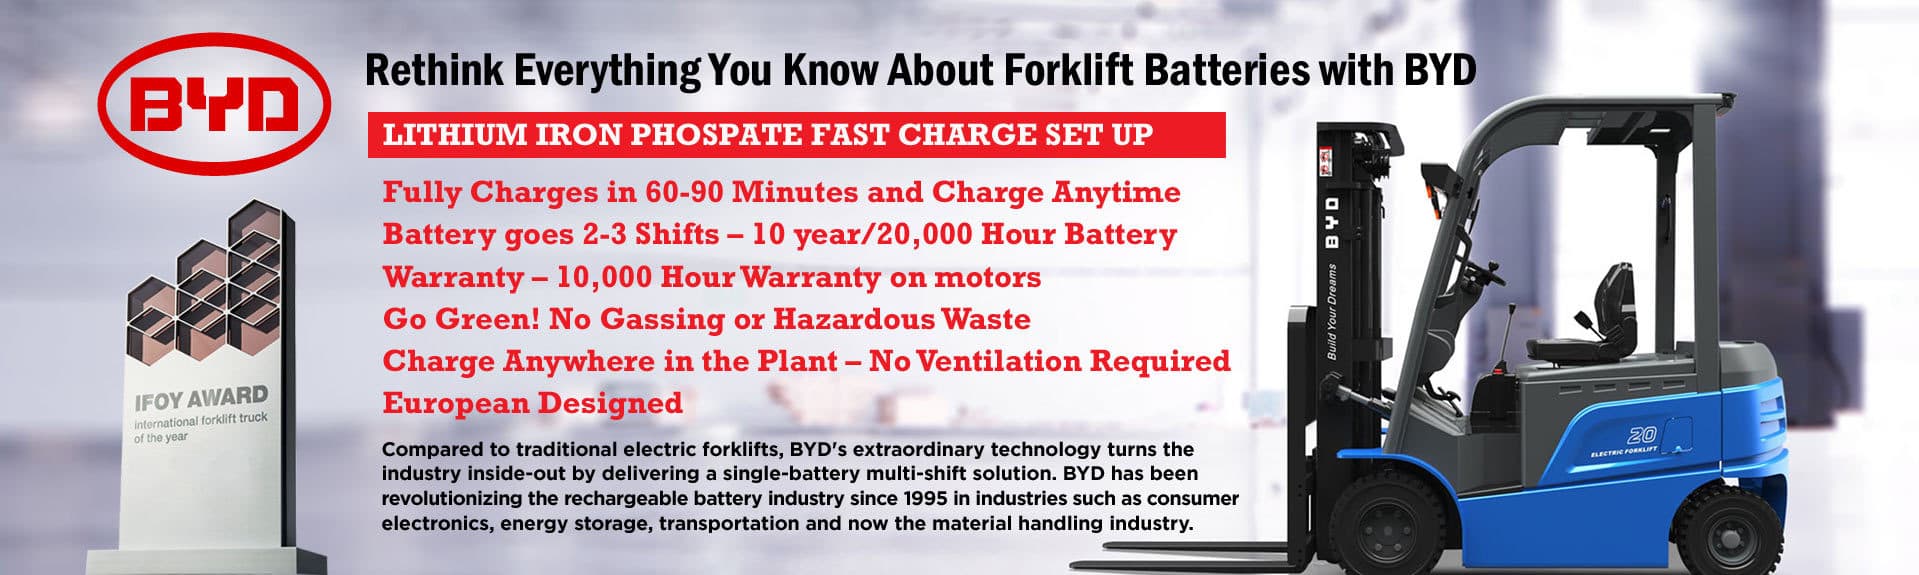 BYD Forklift Deal